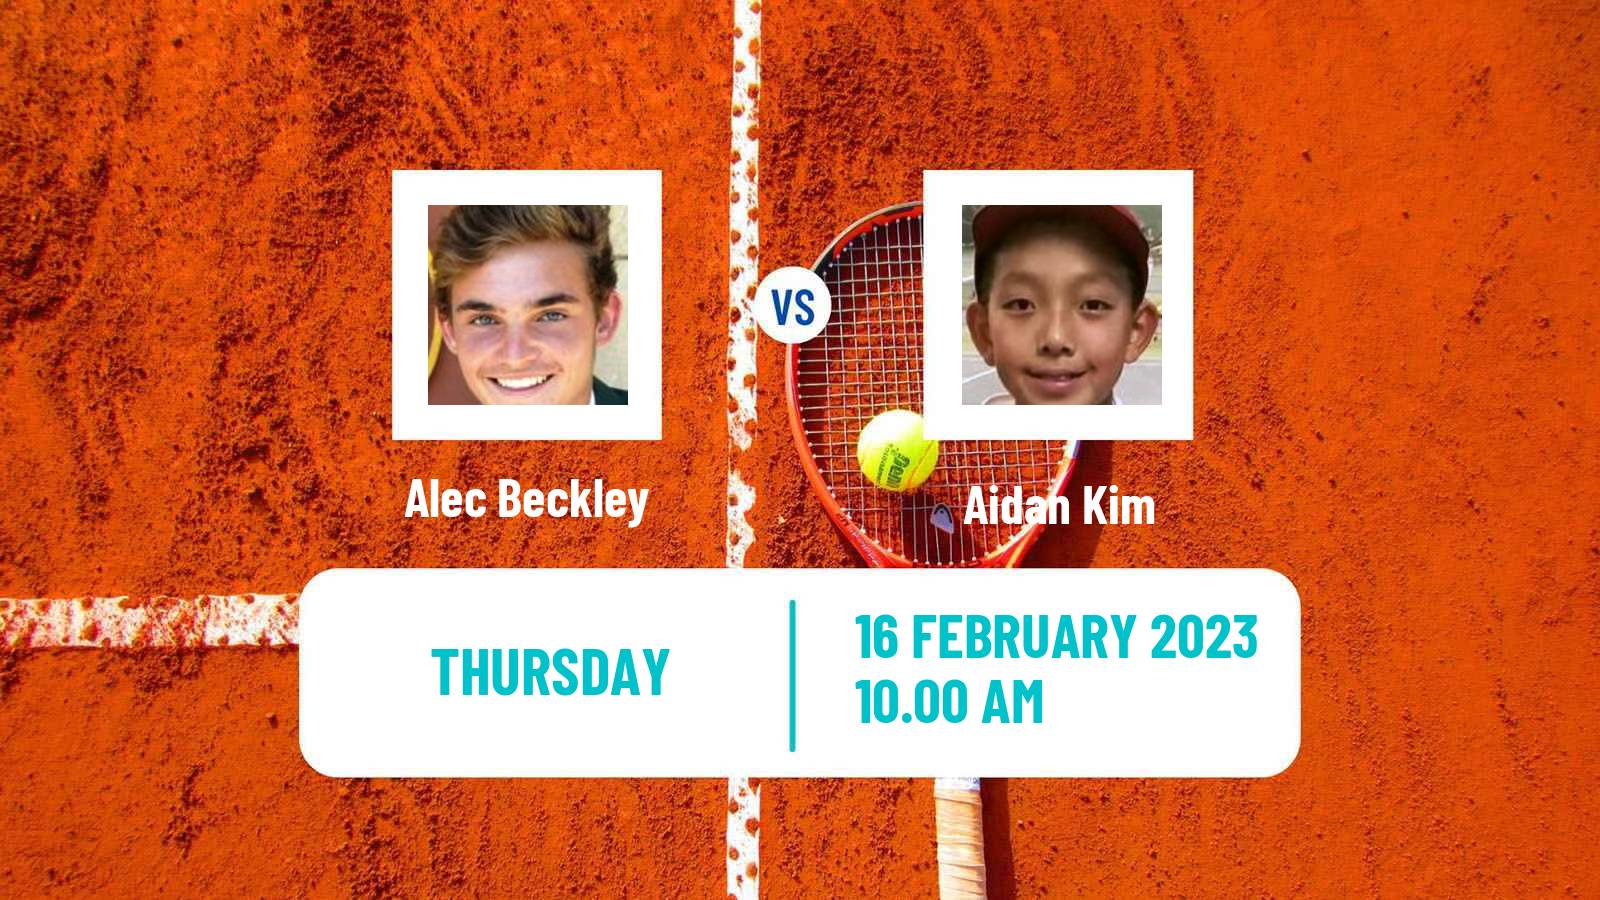 Tennis ITF Tournaments Alec Beckley - Aidan Kim